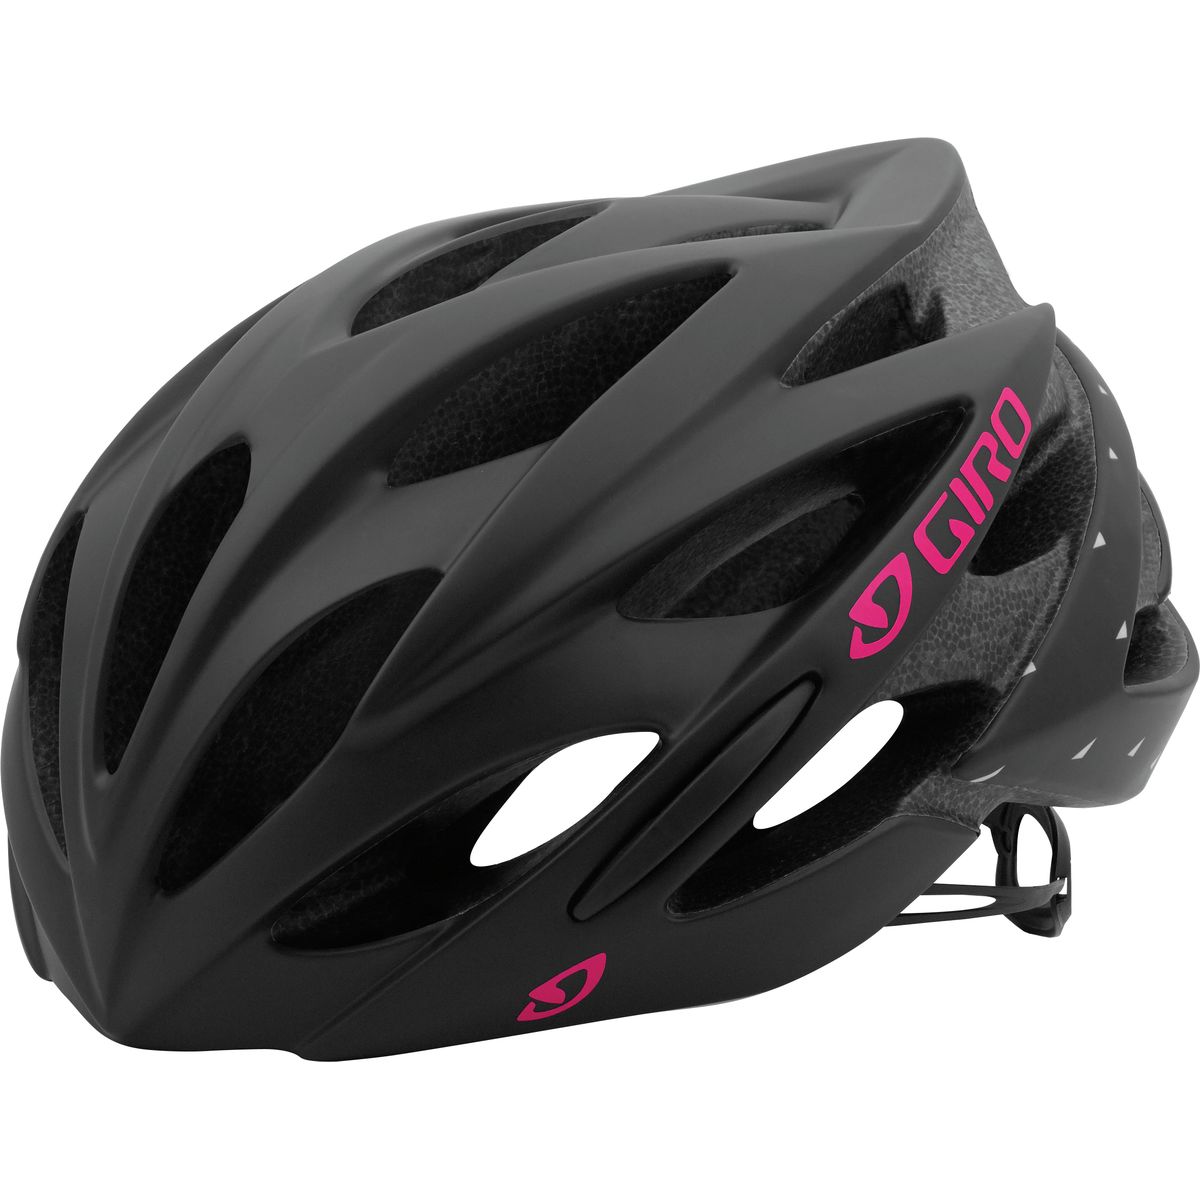 Giro Sonnet Helmet - Women's